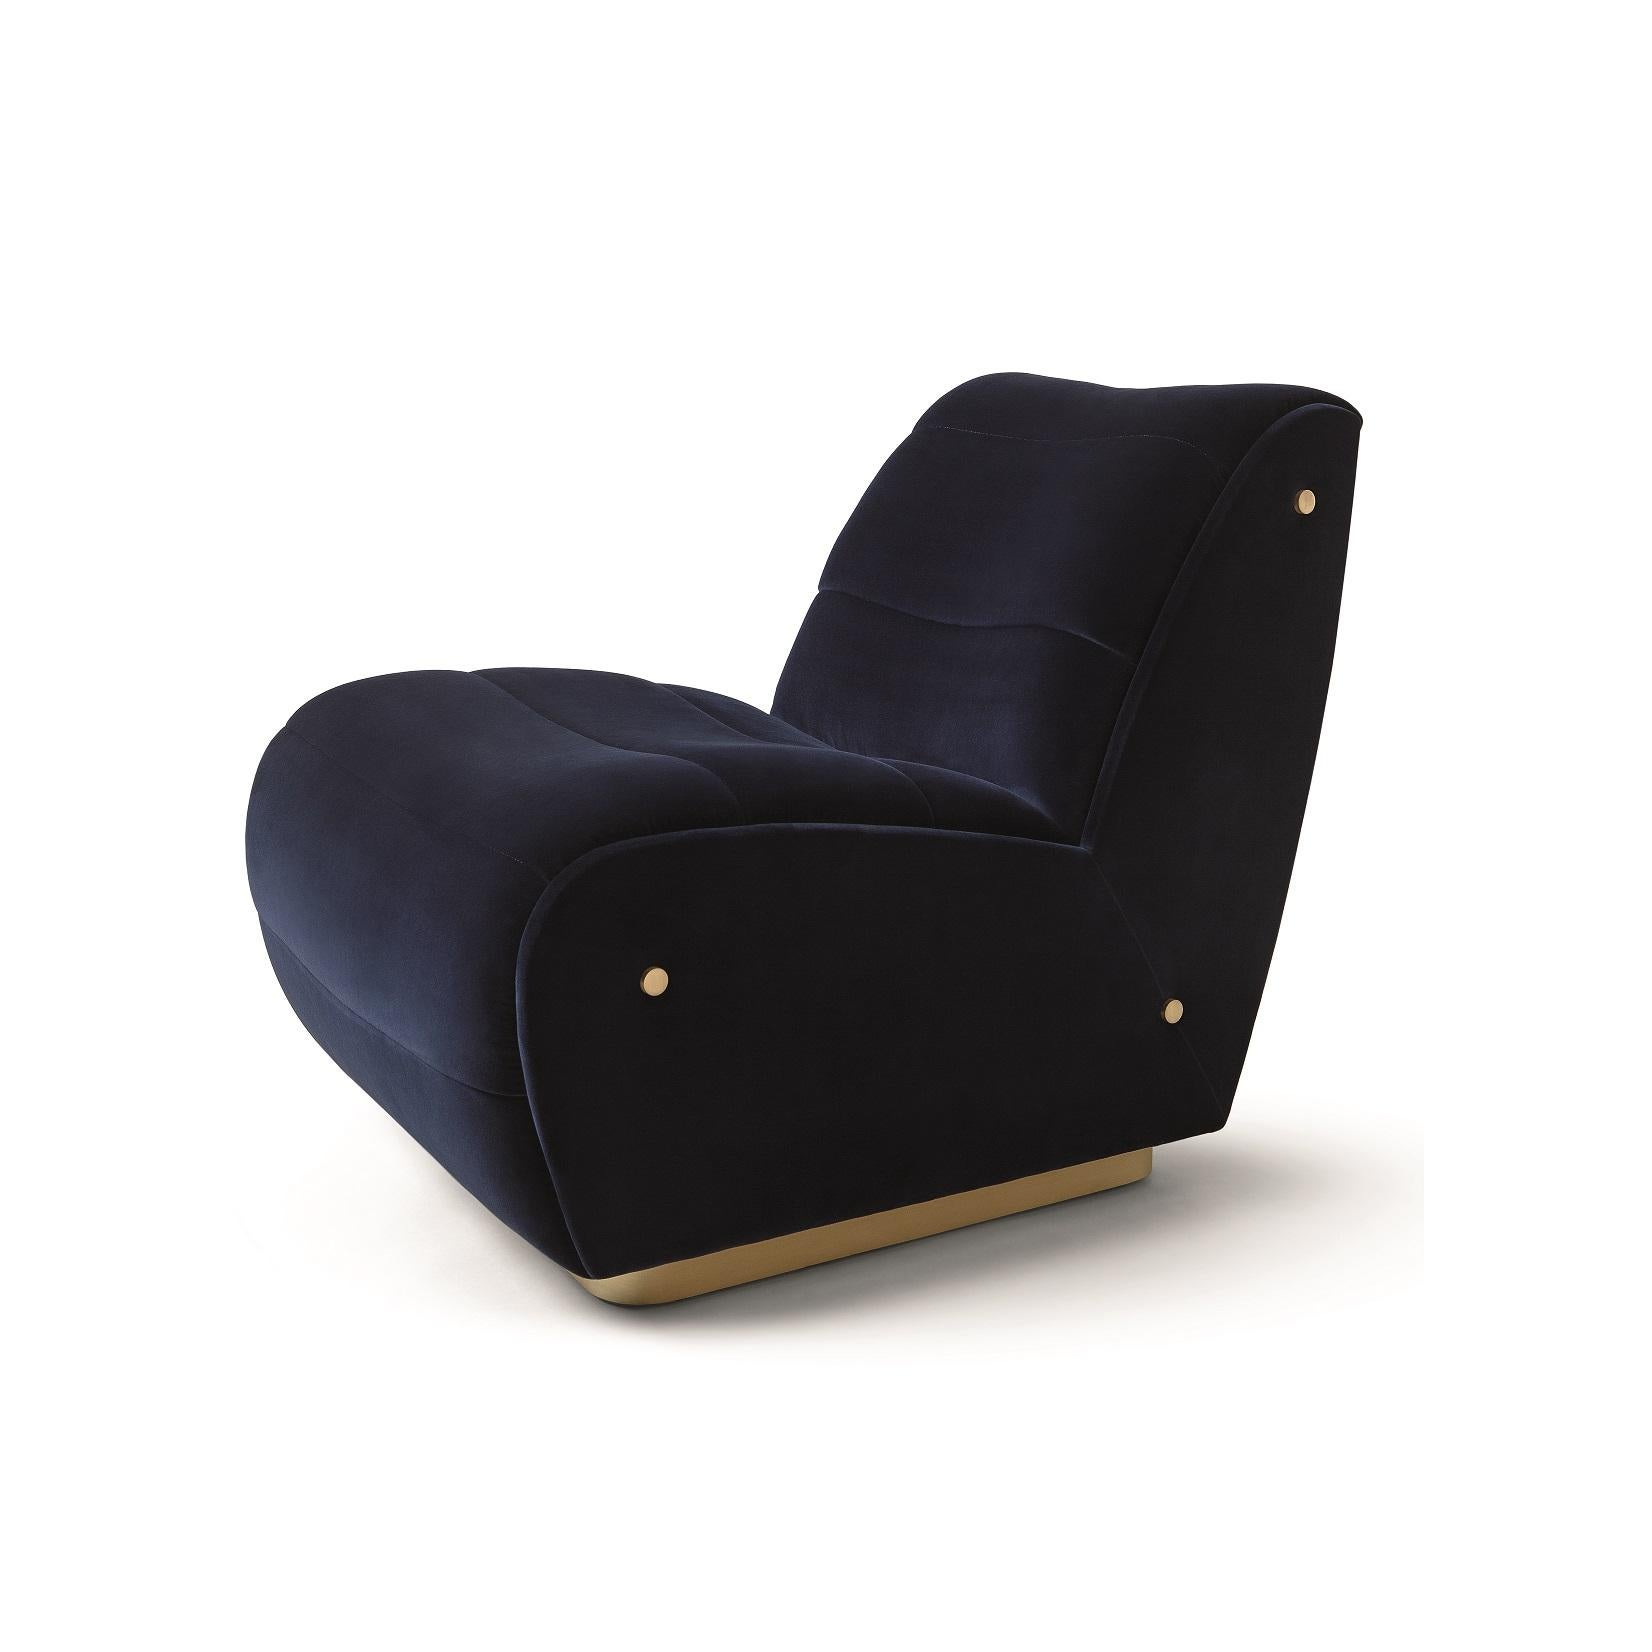 Dieser Sessel ist eine gehobene Hommage an das goldene Zeitalter der Gentleman-Fahrer. Die makellose Struktur des Stücks ist täuschend einfach, aber unbestreitbar eindrucksvoll. Die detaillierten Polsterungen und Nähte zeugen von echter